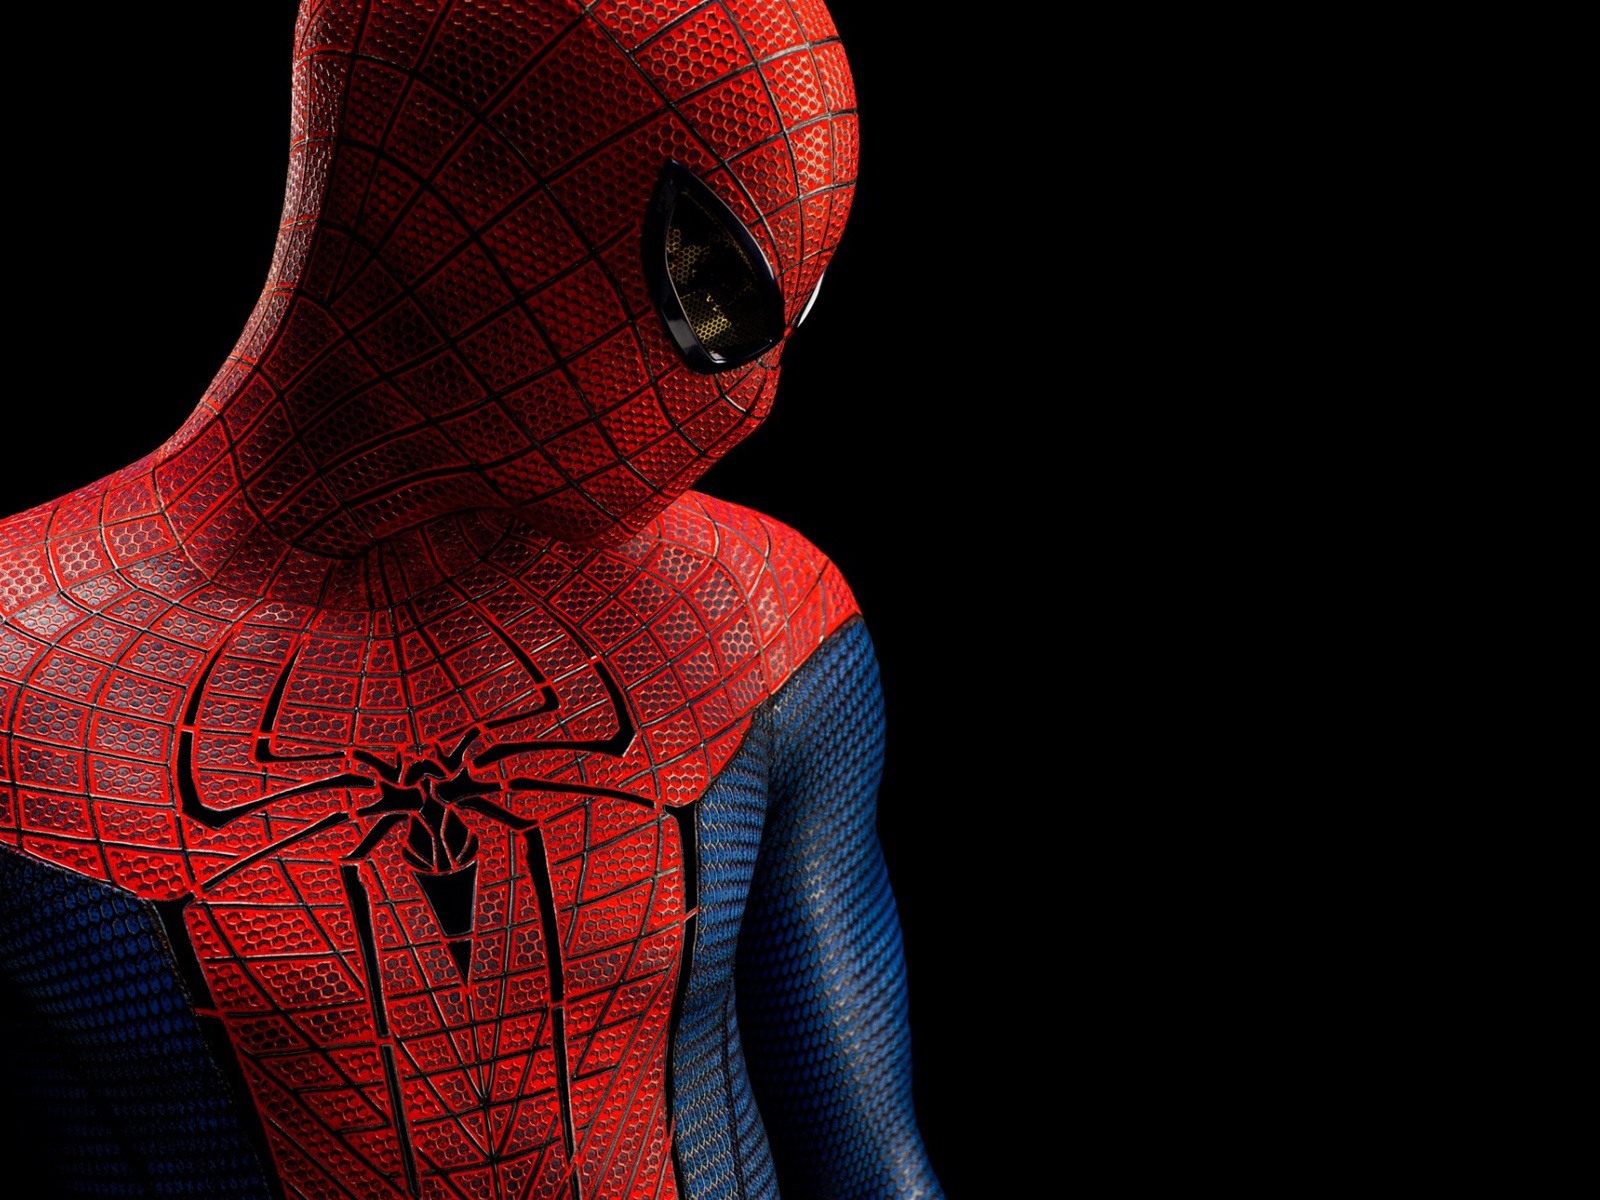 The Amazing Spider-Man 2012 惊奇蜘蛛侠2012 壁纸专辑14 - 1600x1200